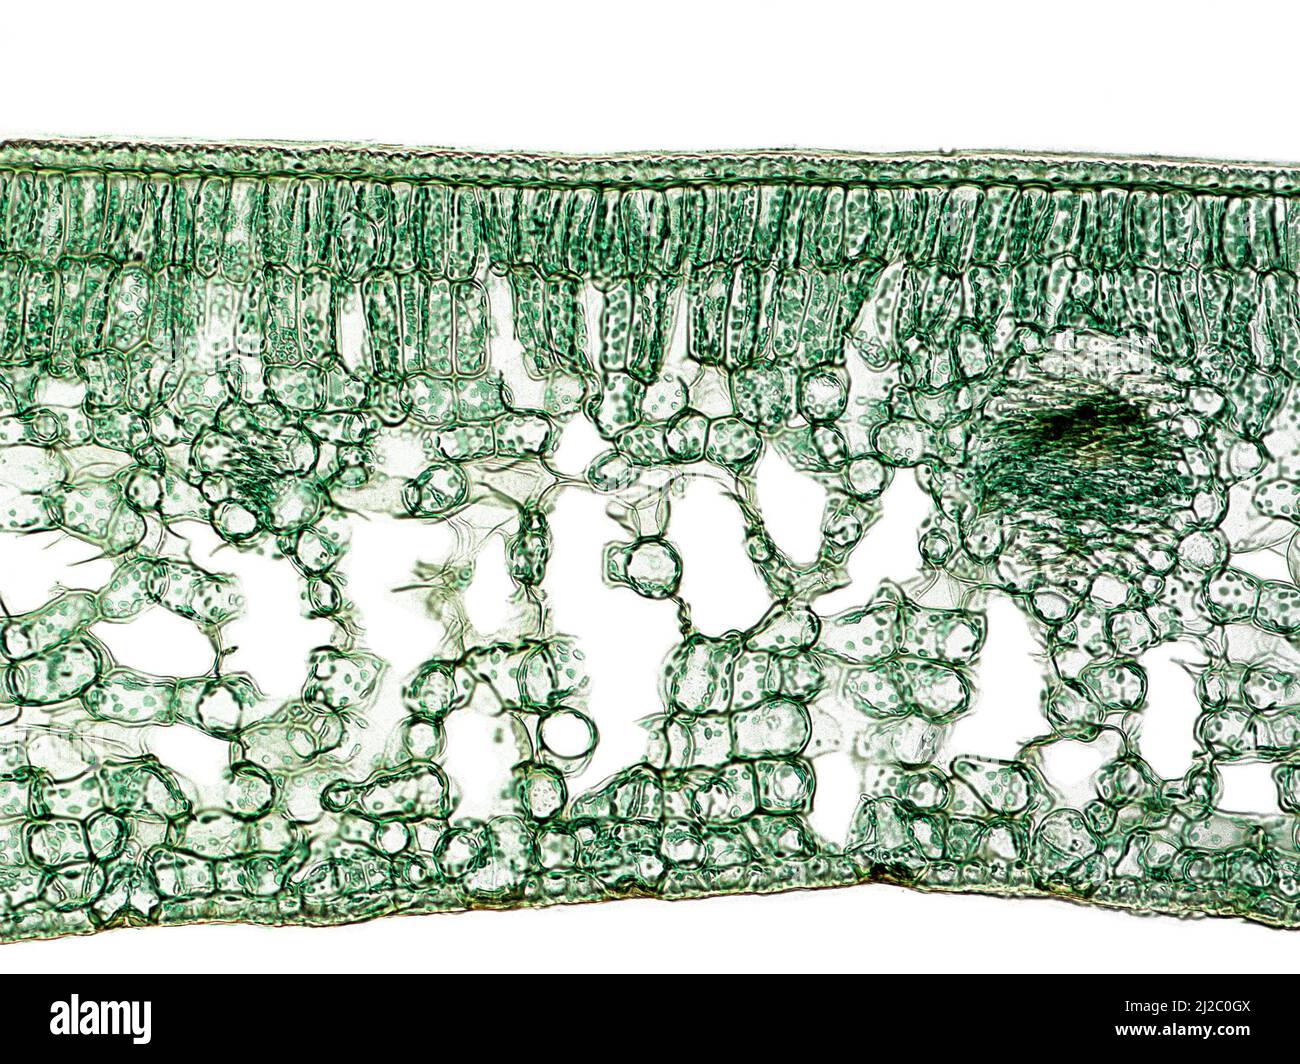 Querschnitt eines Kamelienblattes, das ihre allgemeine innere Struktur zeigt (Nagelhaut, Palisade-Parenchym, schwammiges Parenchym, Gefäßbündel). Stockfoto